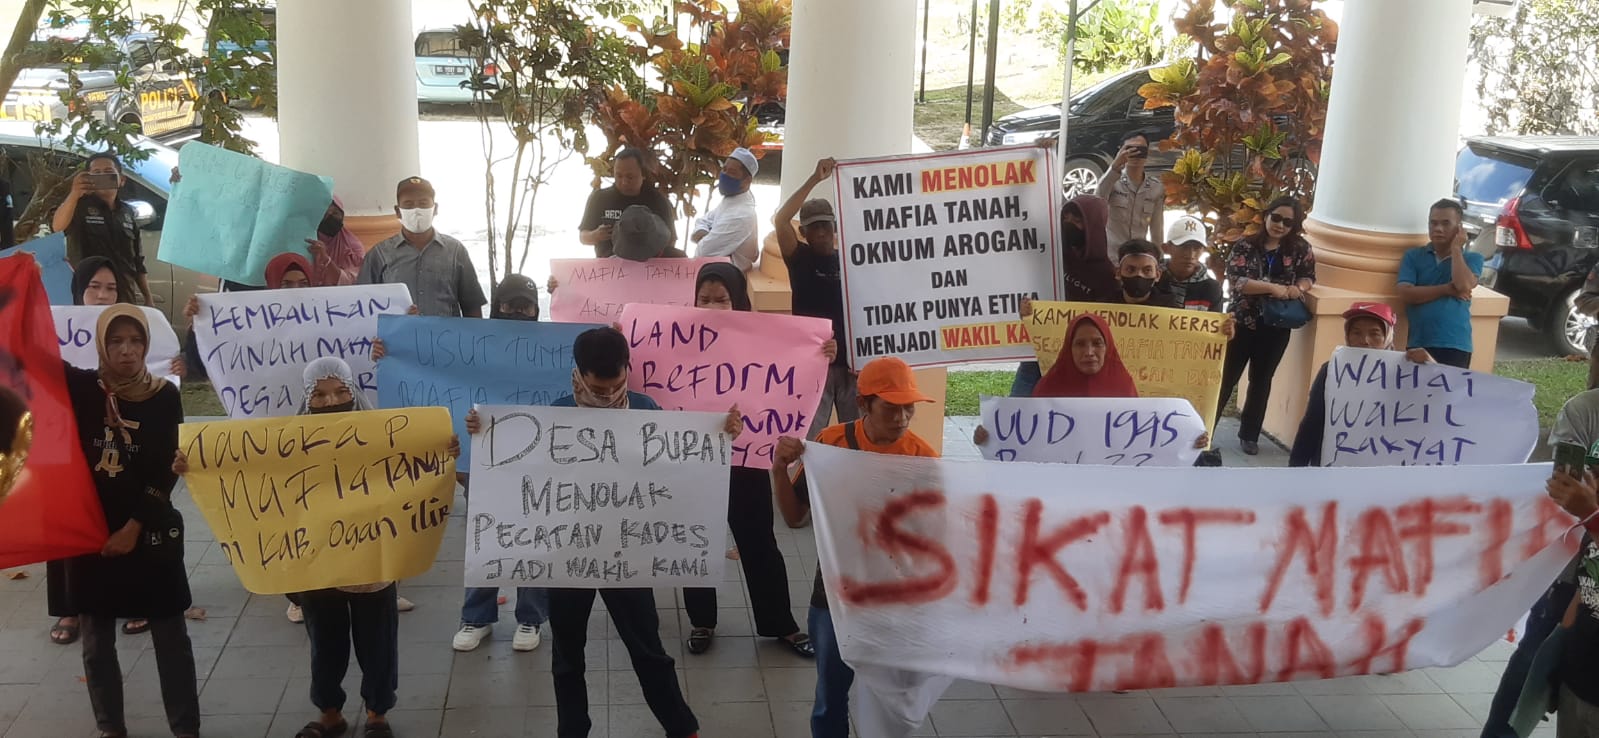 Dugaan Adanya Mafia Tanah, Warga Burai Indralaya Demo di Kantor DPRD Kabupaten Ogan Ilir